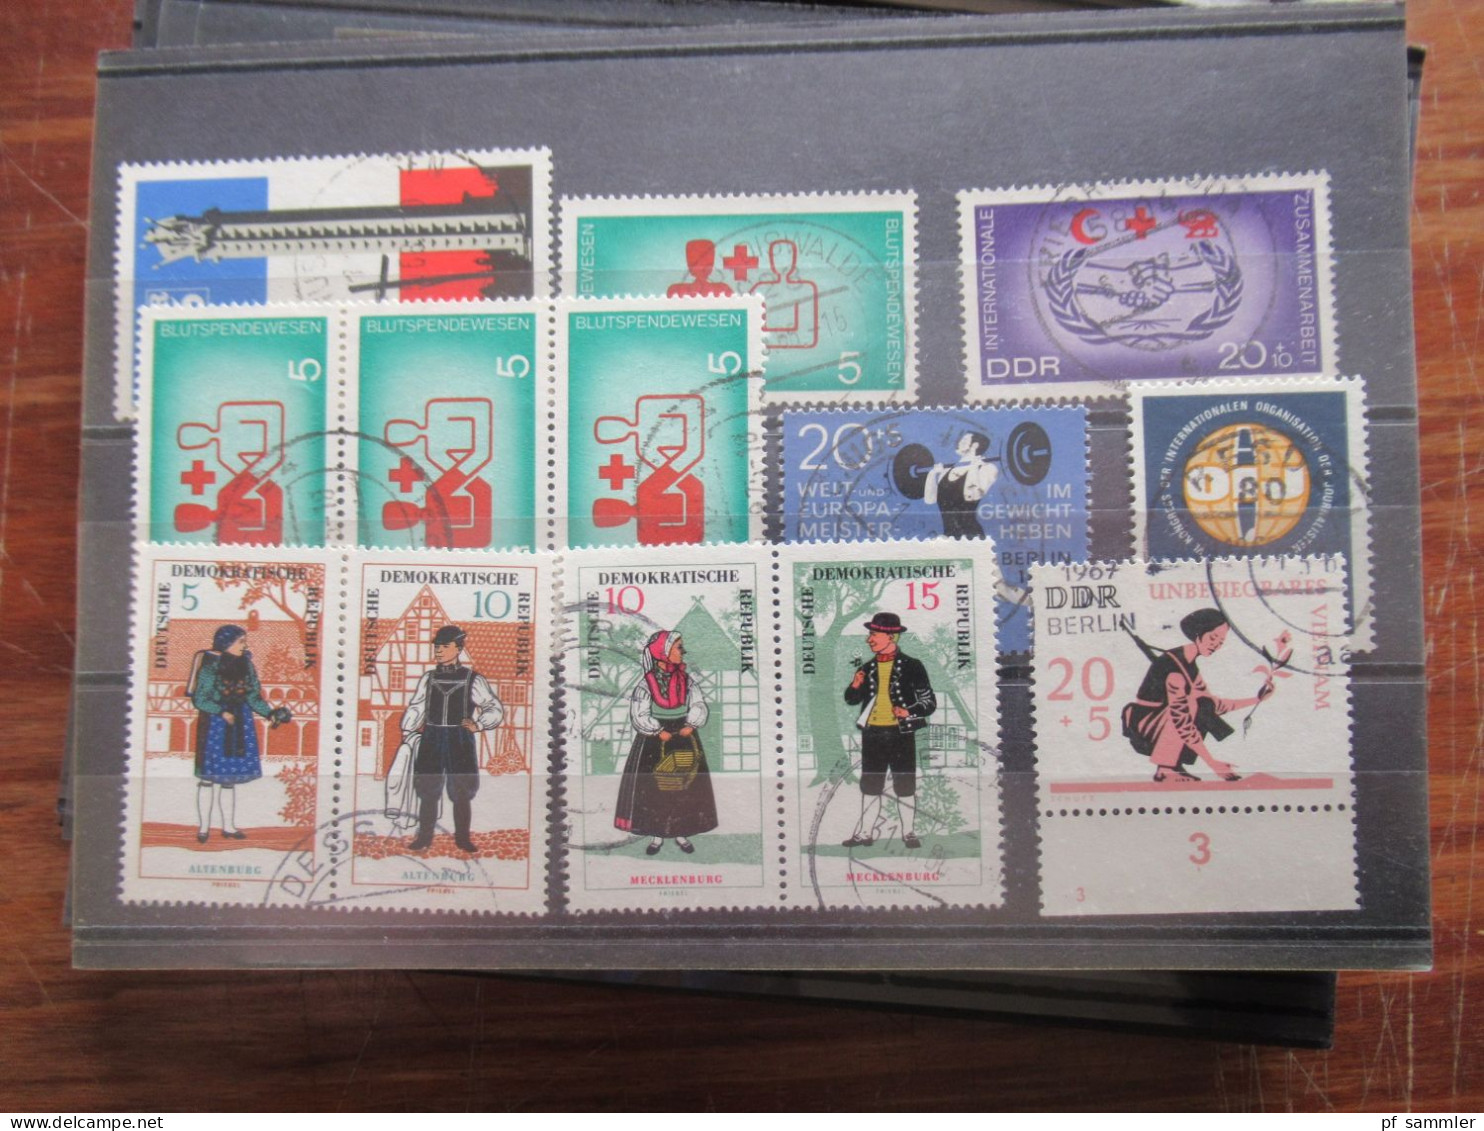 DDR ab 1950er Jahre Steckkartenposten mit einigen Randstücken gestempelt und ganz wenige ungebraucht! Fundgrube!!